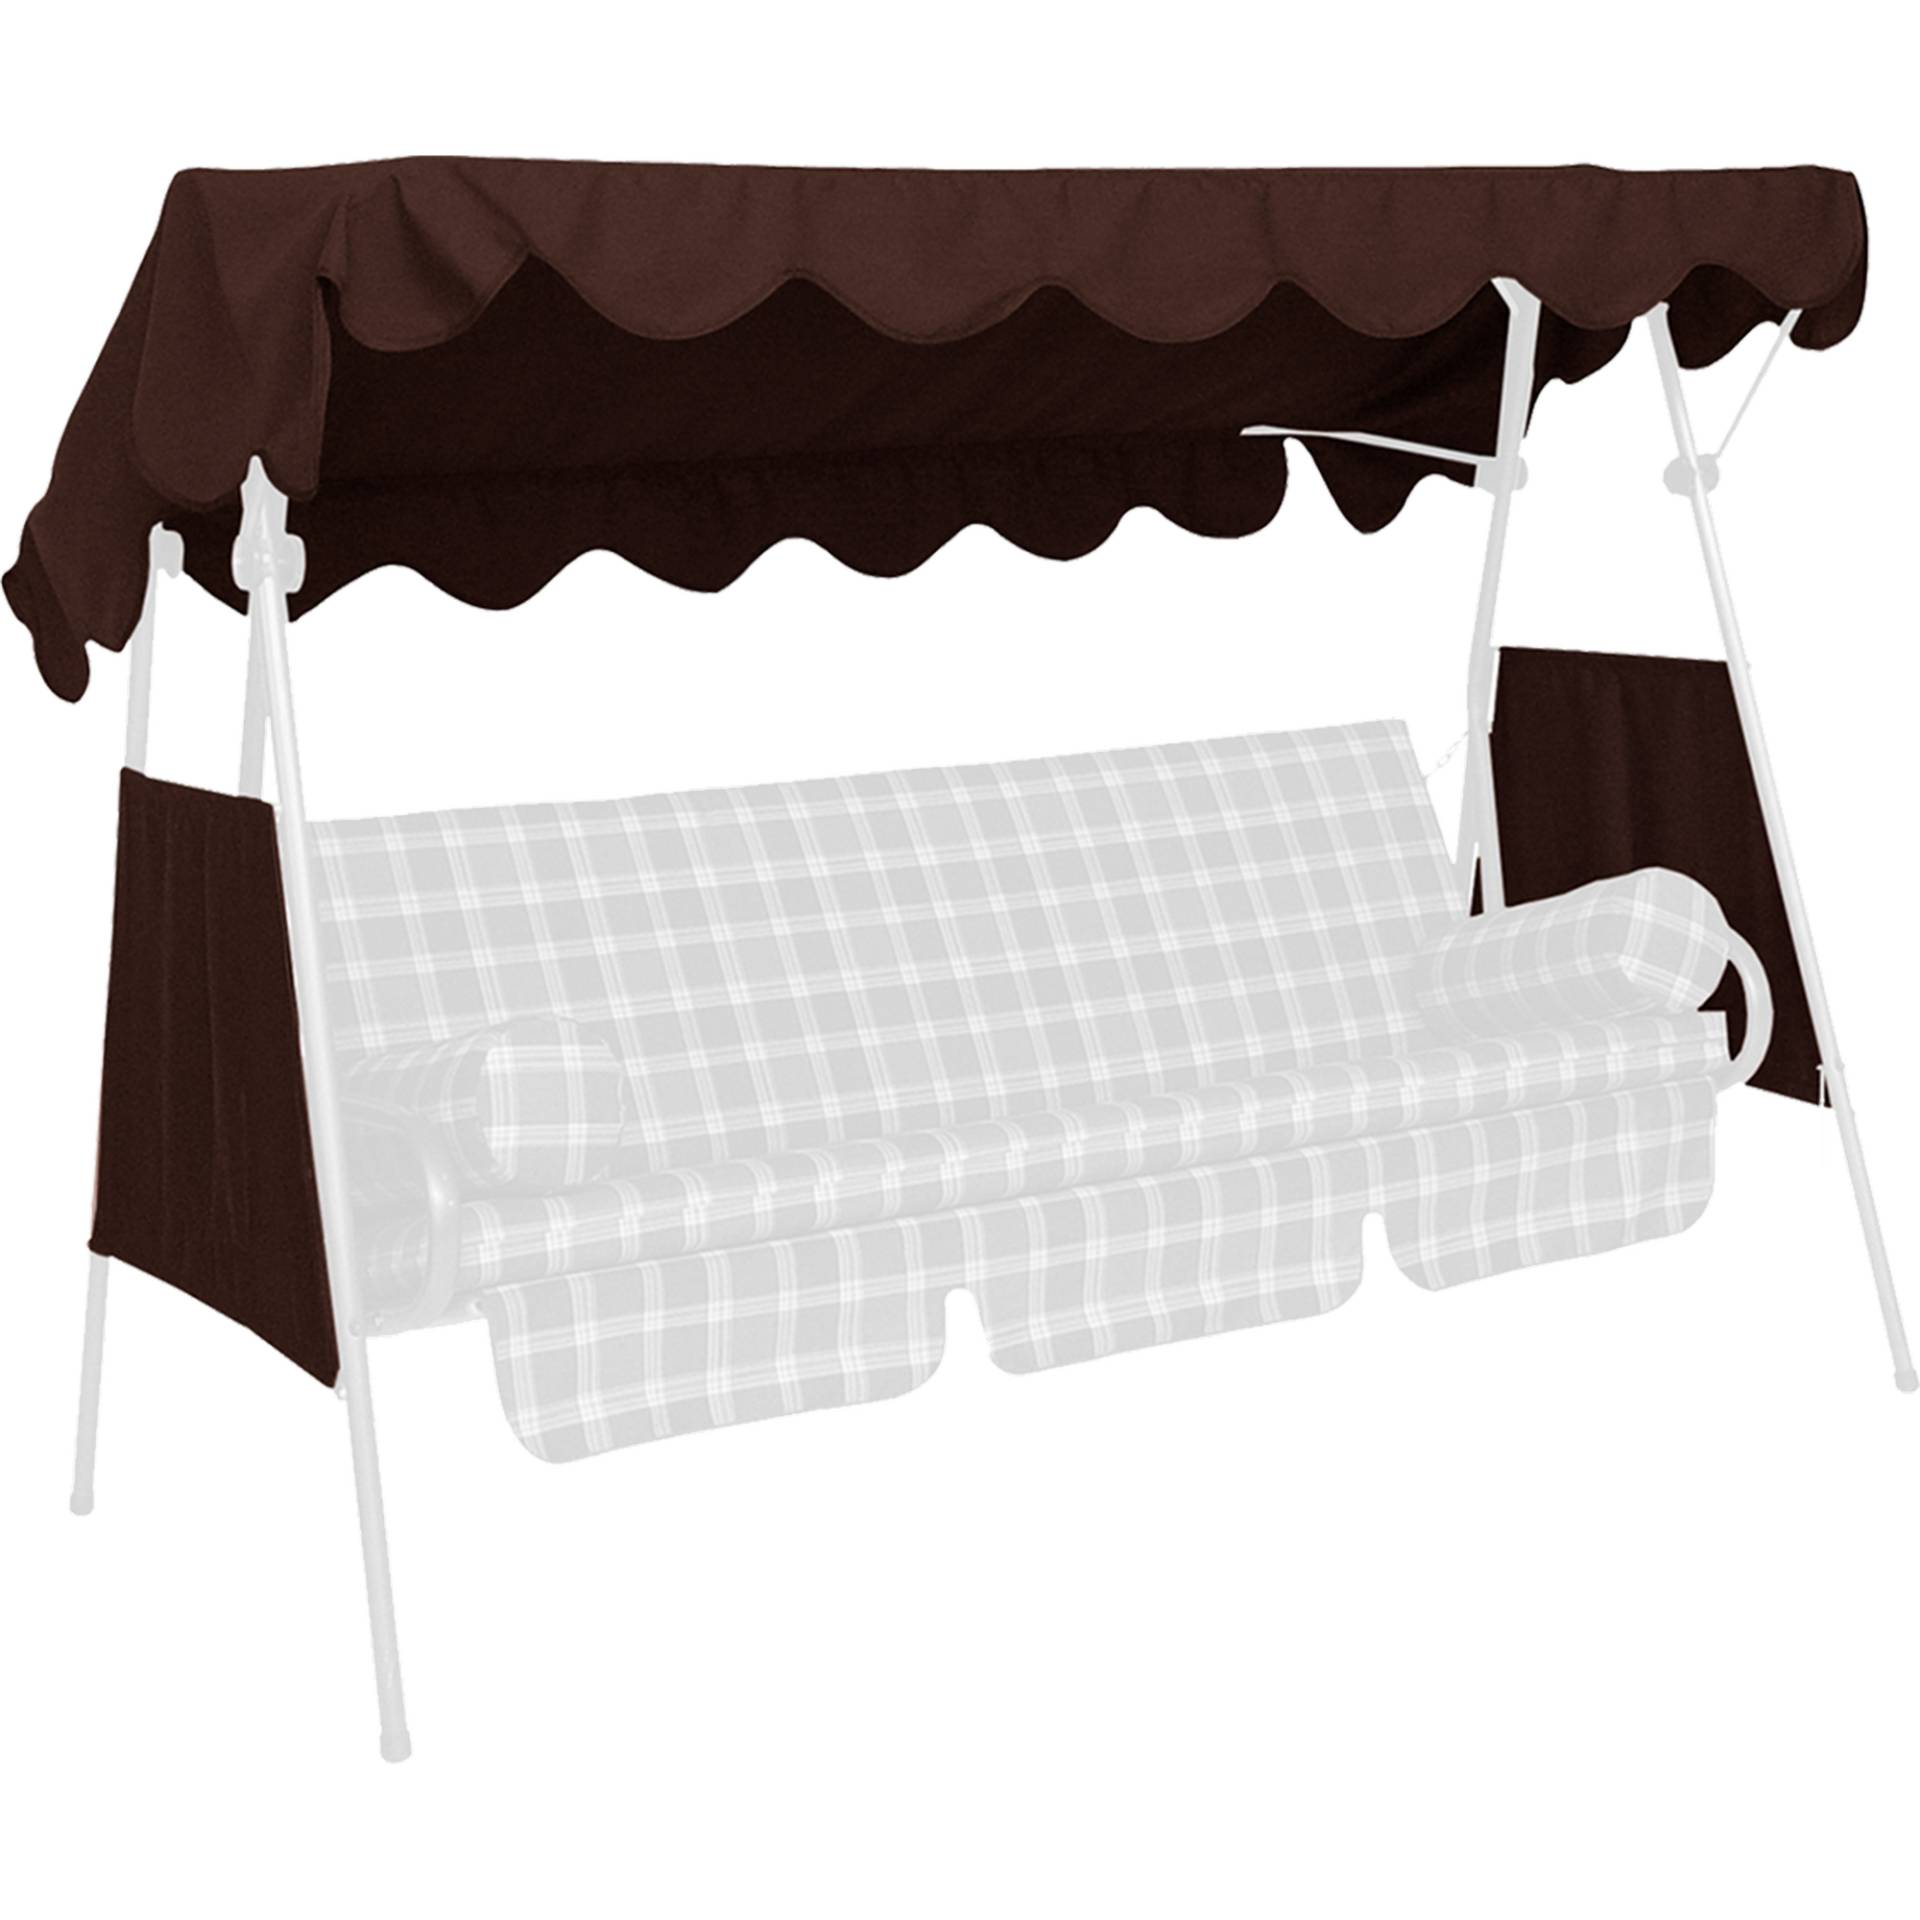 Angerer Freizeitmöbel Sonnendach für 3-Sitzer Hollywoodschaukel Swingtex braun 200 x 120 cm von Angerer Freizeitmöbel